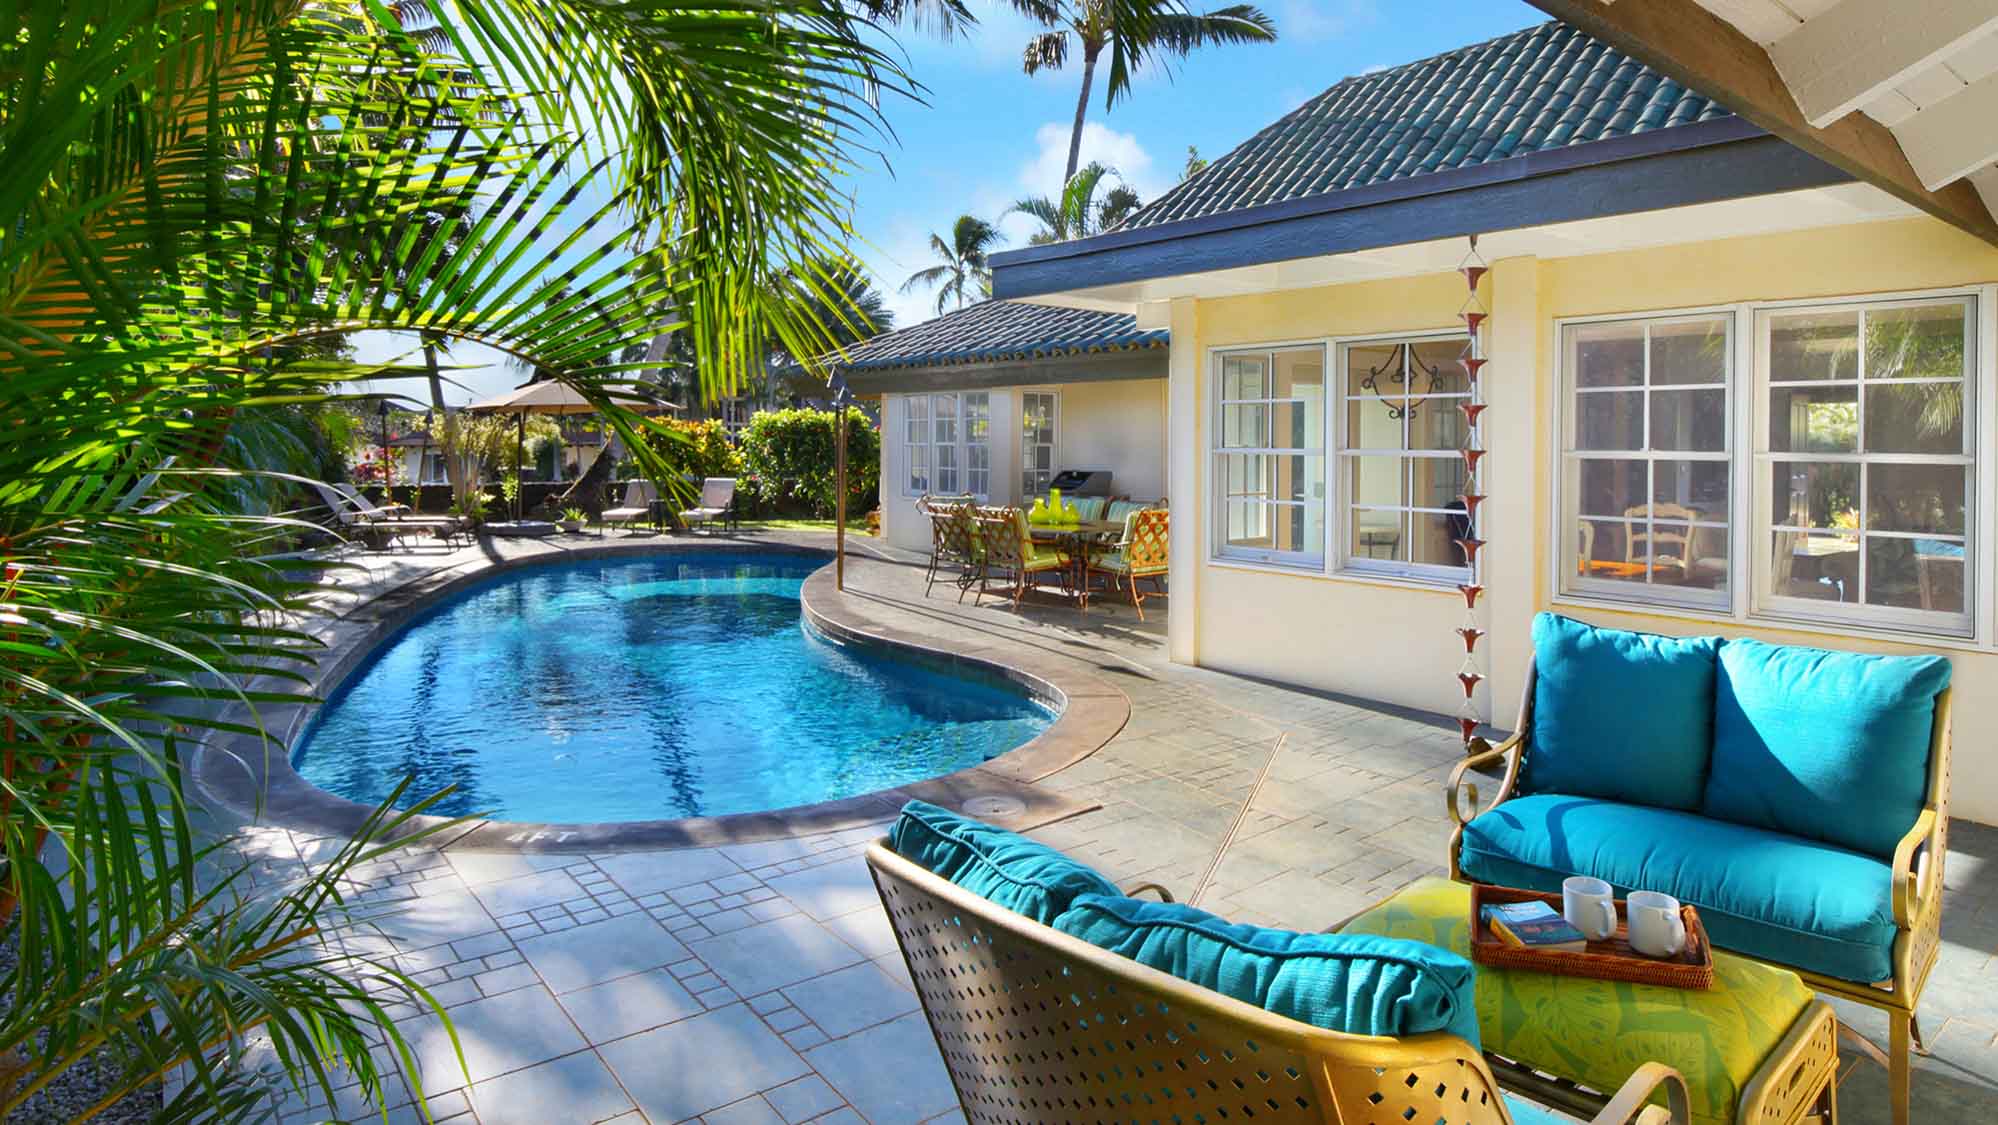 Poipu Kai Beach House - Private Backyard Swimming Pool & Deck - Parrish Kauai